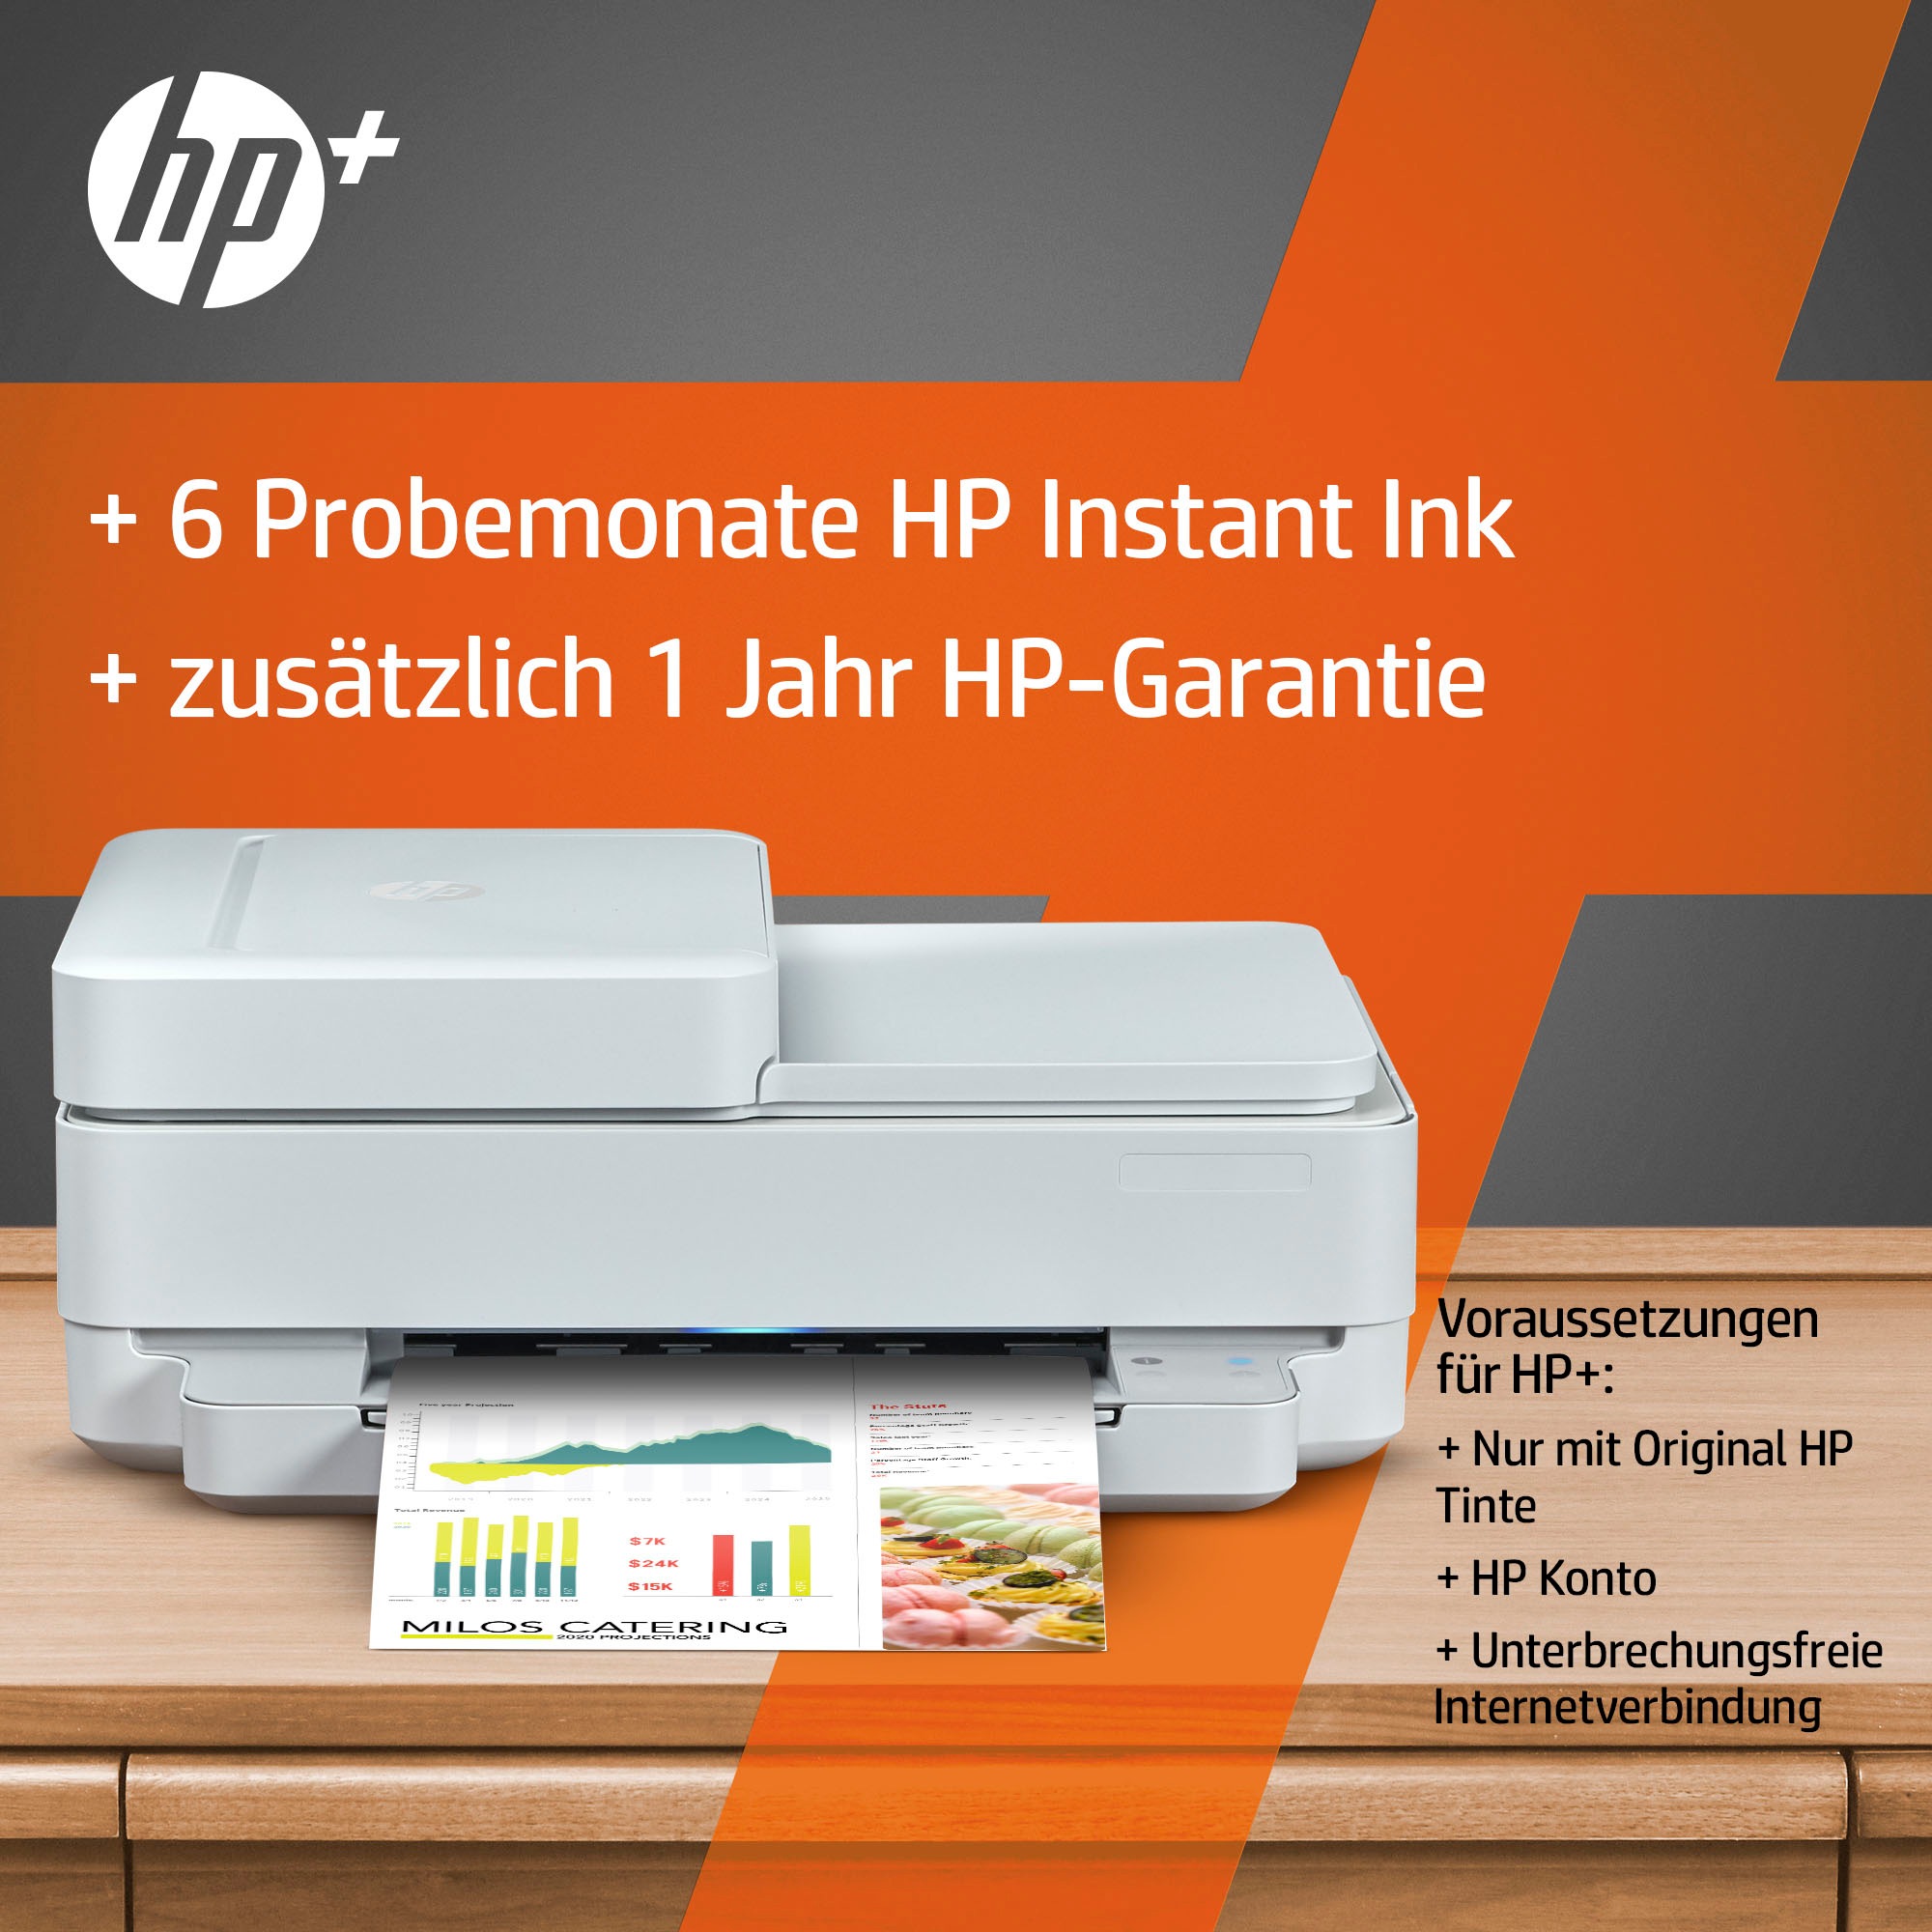 HP Multifunktionsdrucker HP Ink A4 »ENVY 6420e Printer kaufen auf 7ppm«, color Rechnung unterstützt Instant AiO